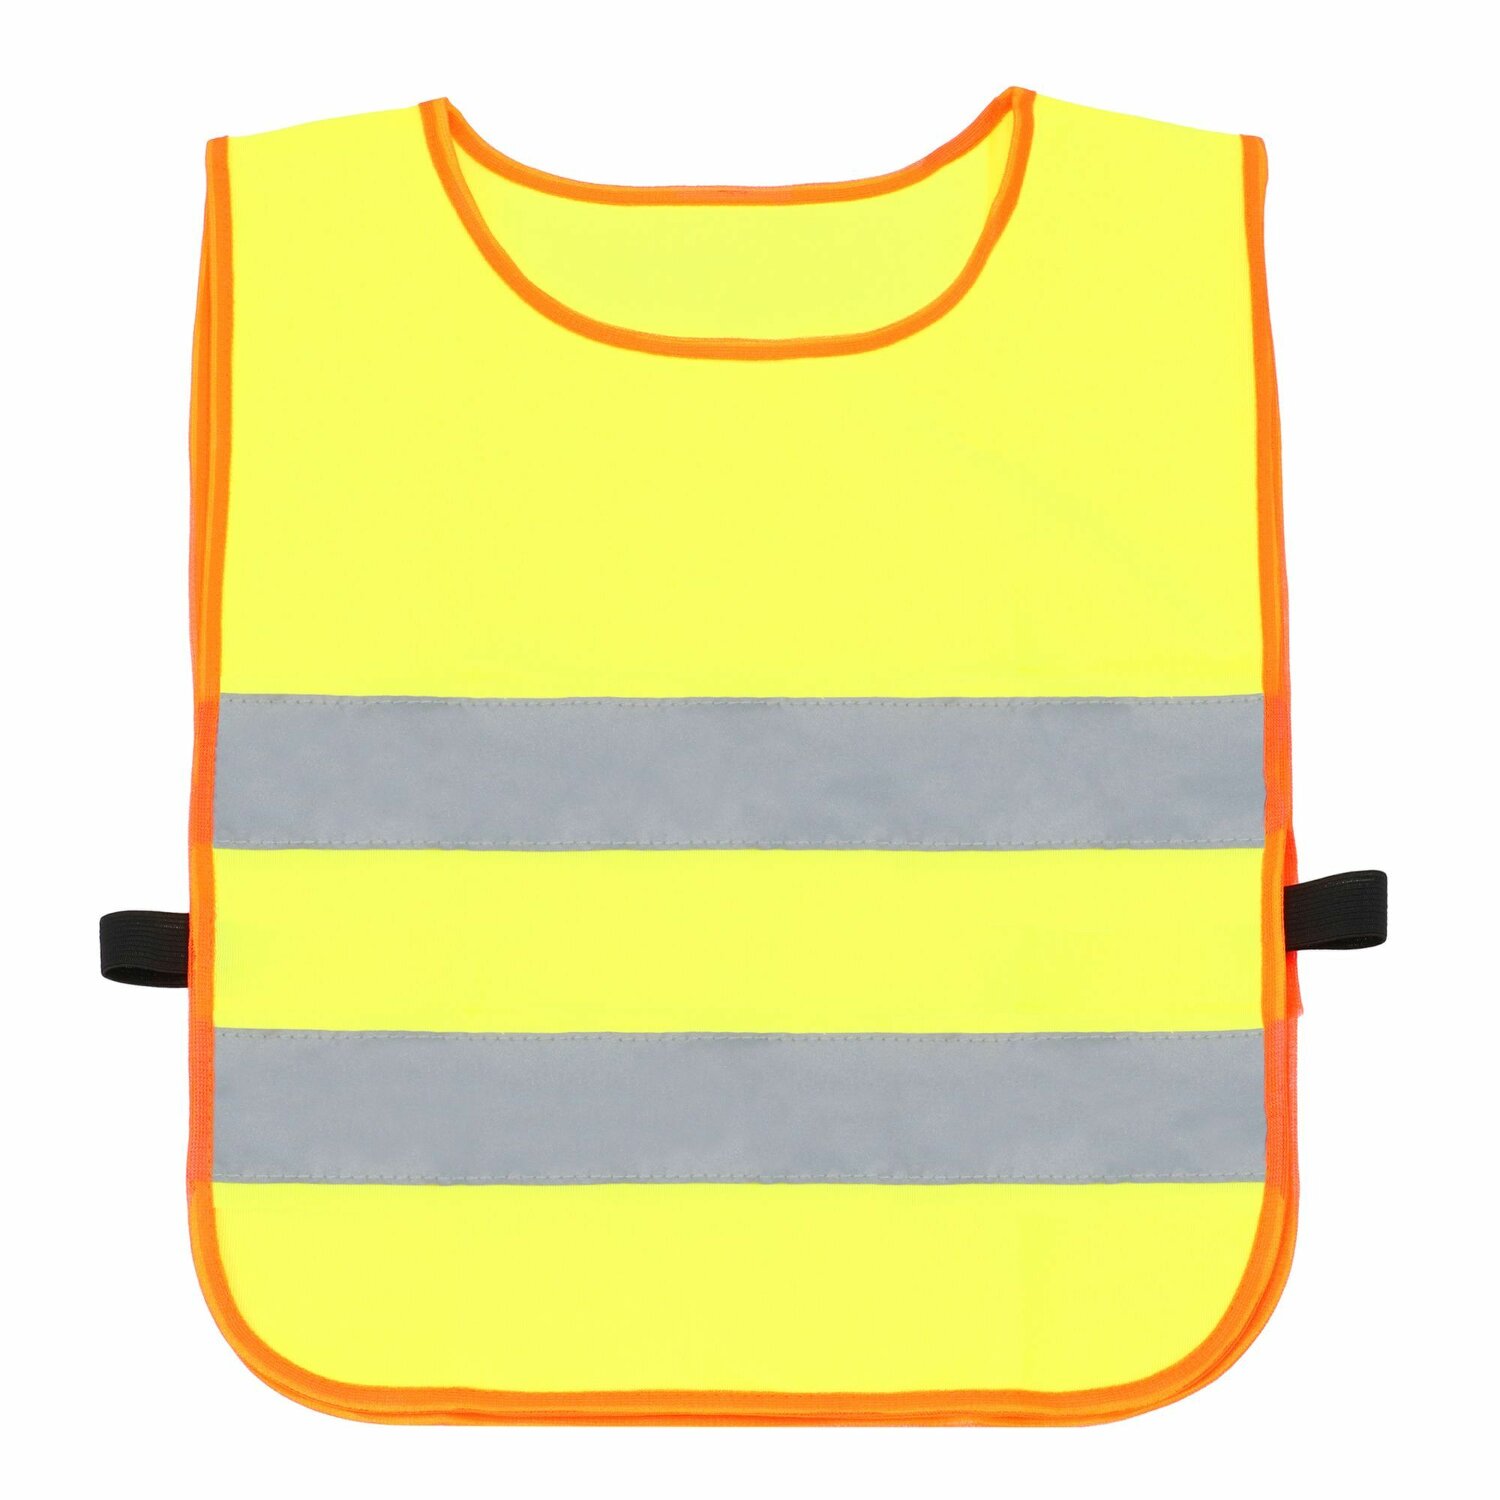 Inspirion Mini Hero Sicherheitsweste für Kinder 36 cm gelb